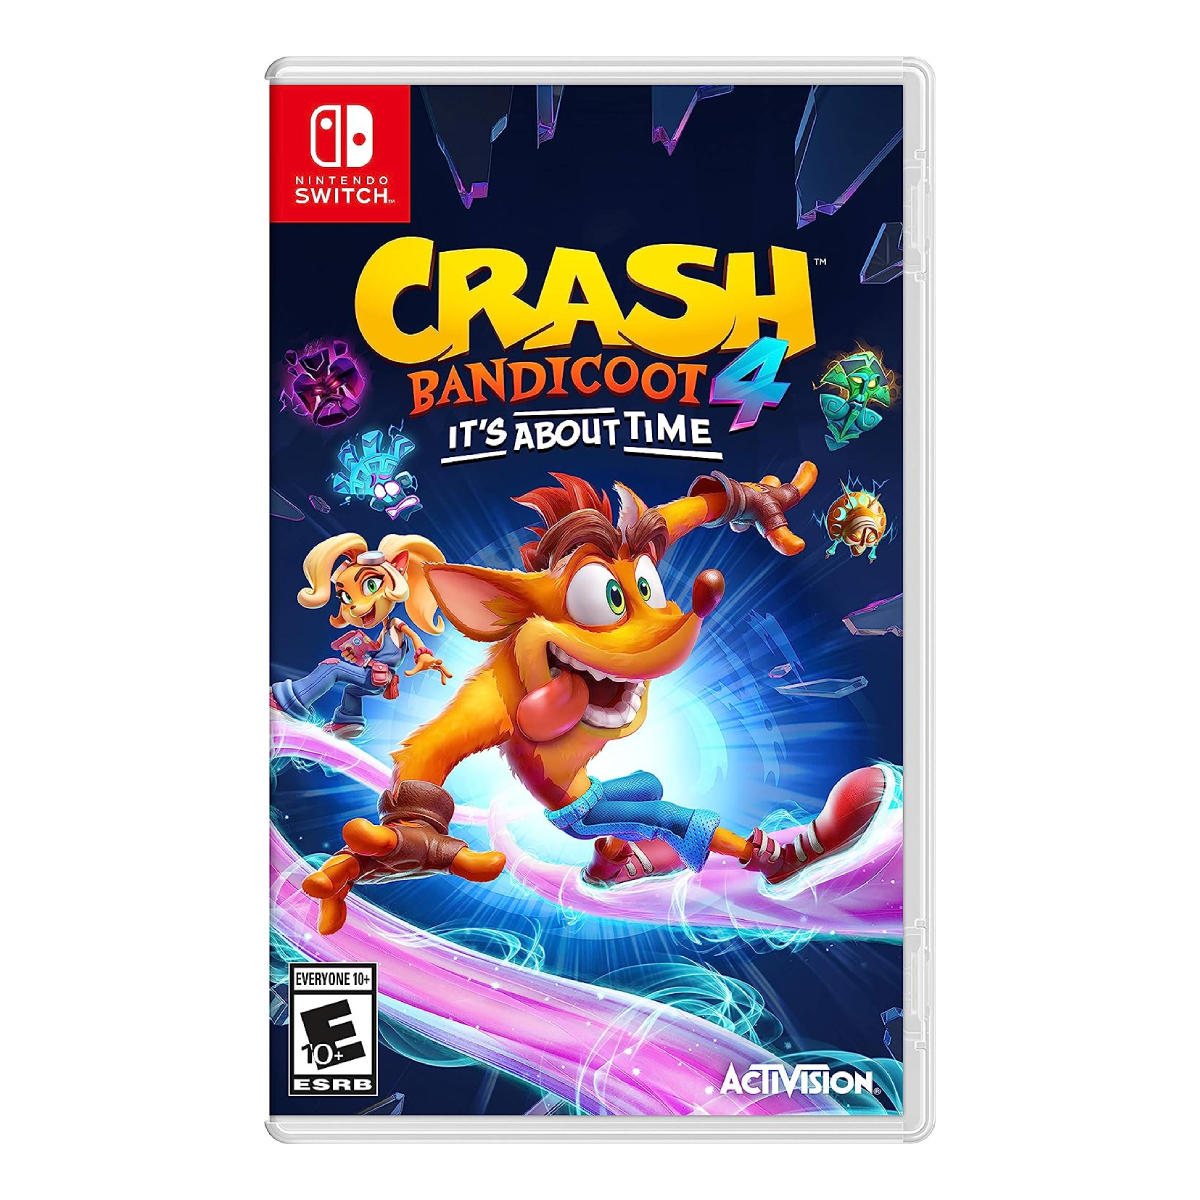 Crash Bandicoot 4 It's About Time desvela cuanto espacio ocupará en  Nintendo Switch